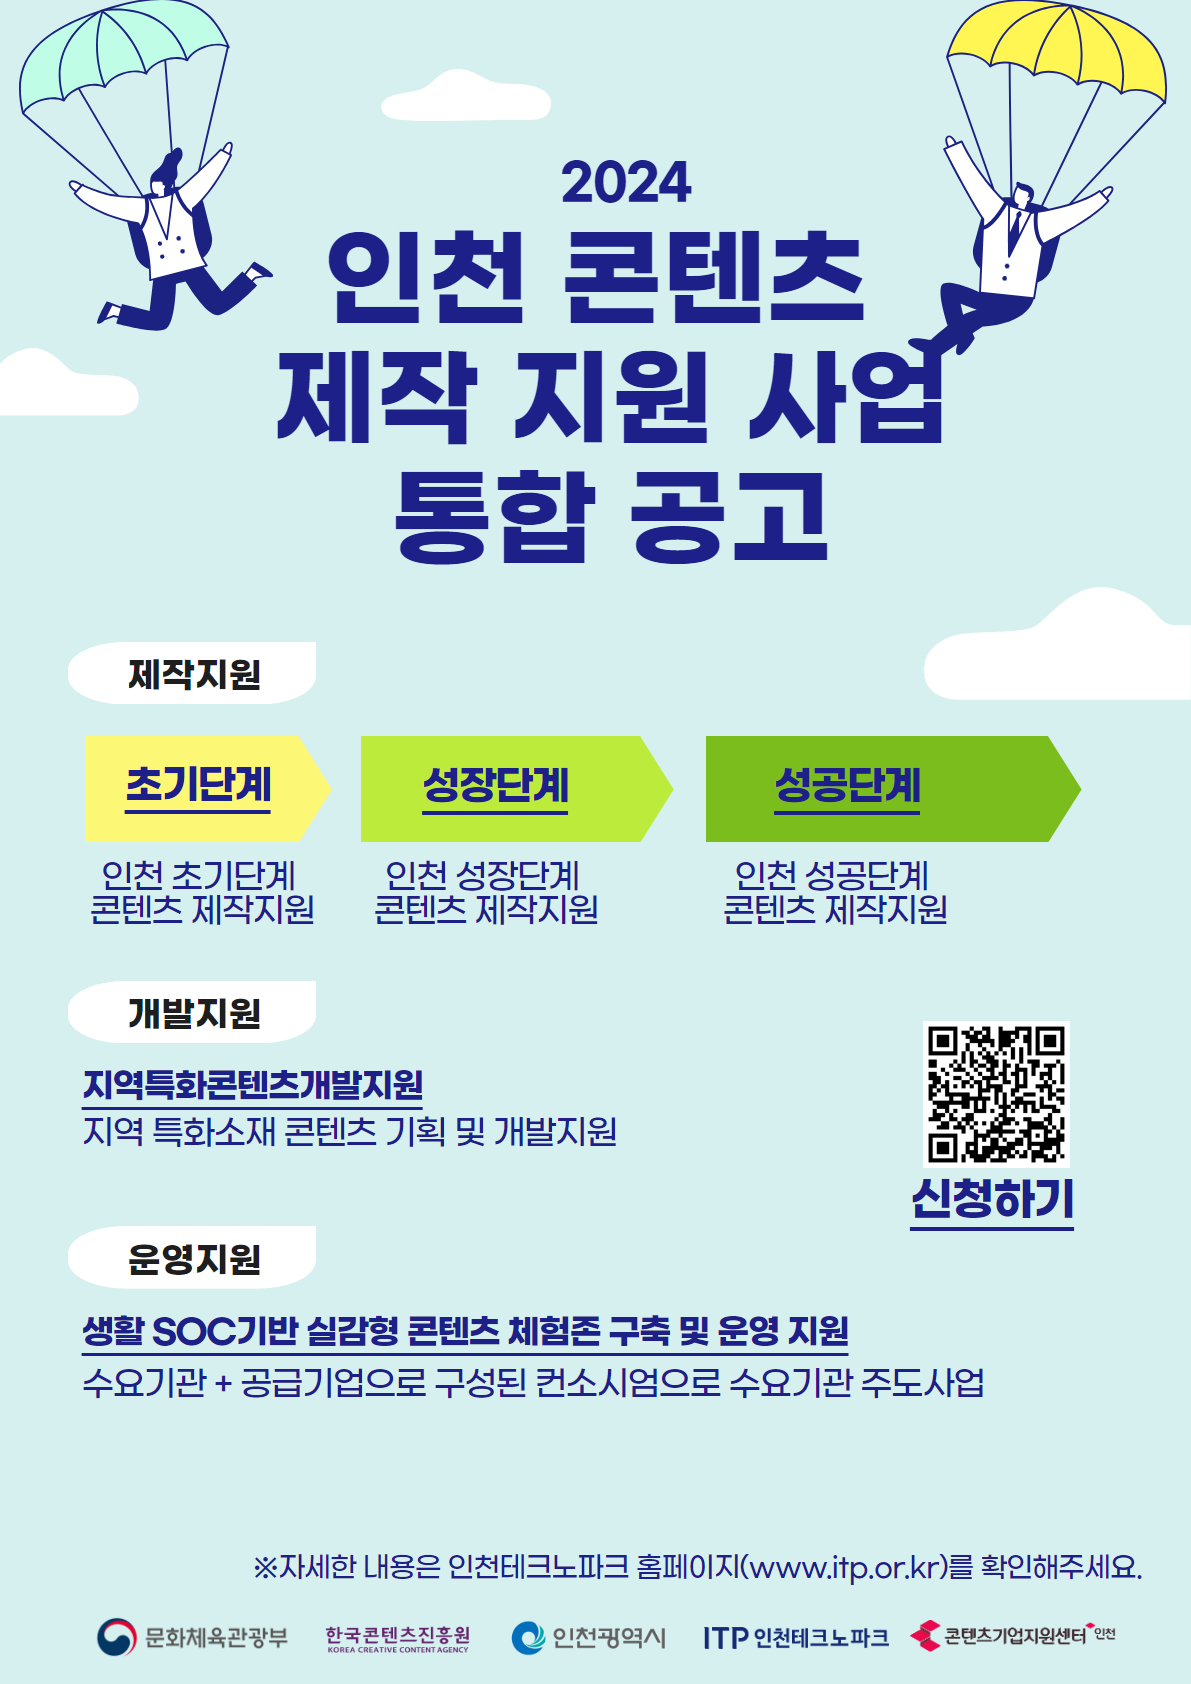 인천 콘텐츠 제작 지원 사업 통합 공고_포스터.jpg